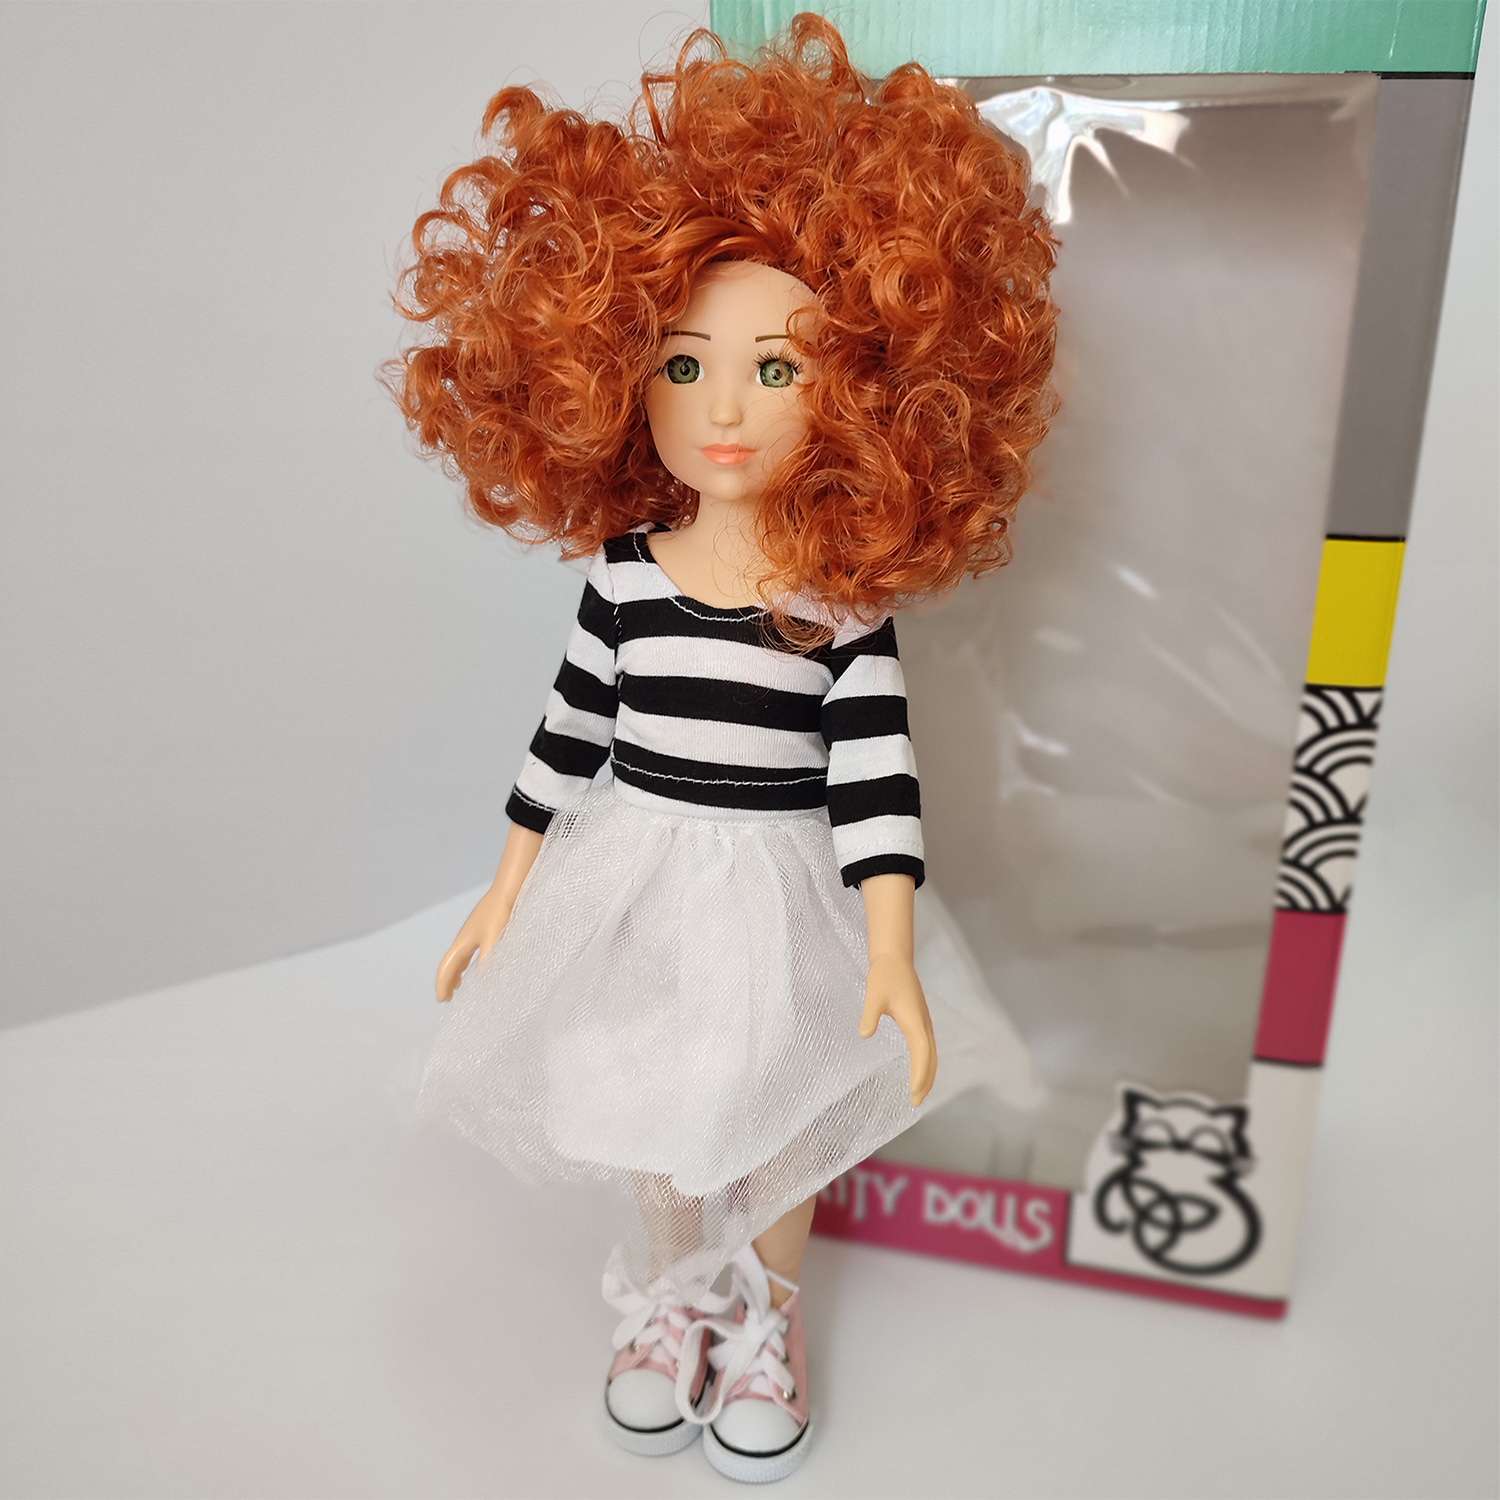 Кукла виниловая 32см TRINITY Анфиса юбка белая c полосатой футболкой 14825 - фото 1